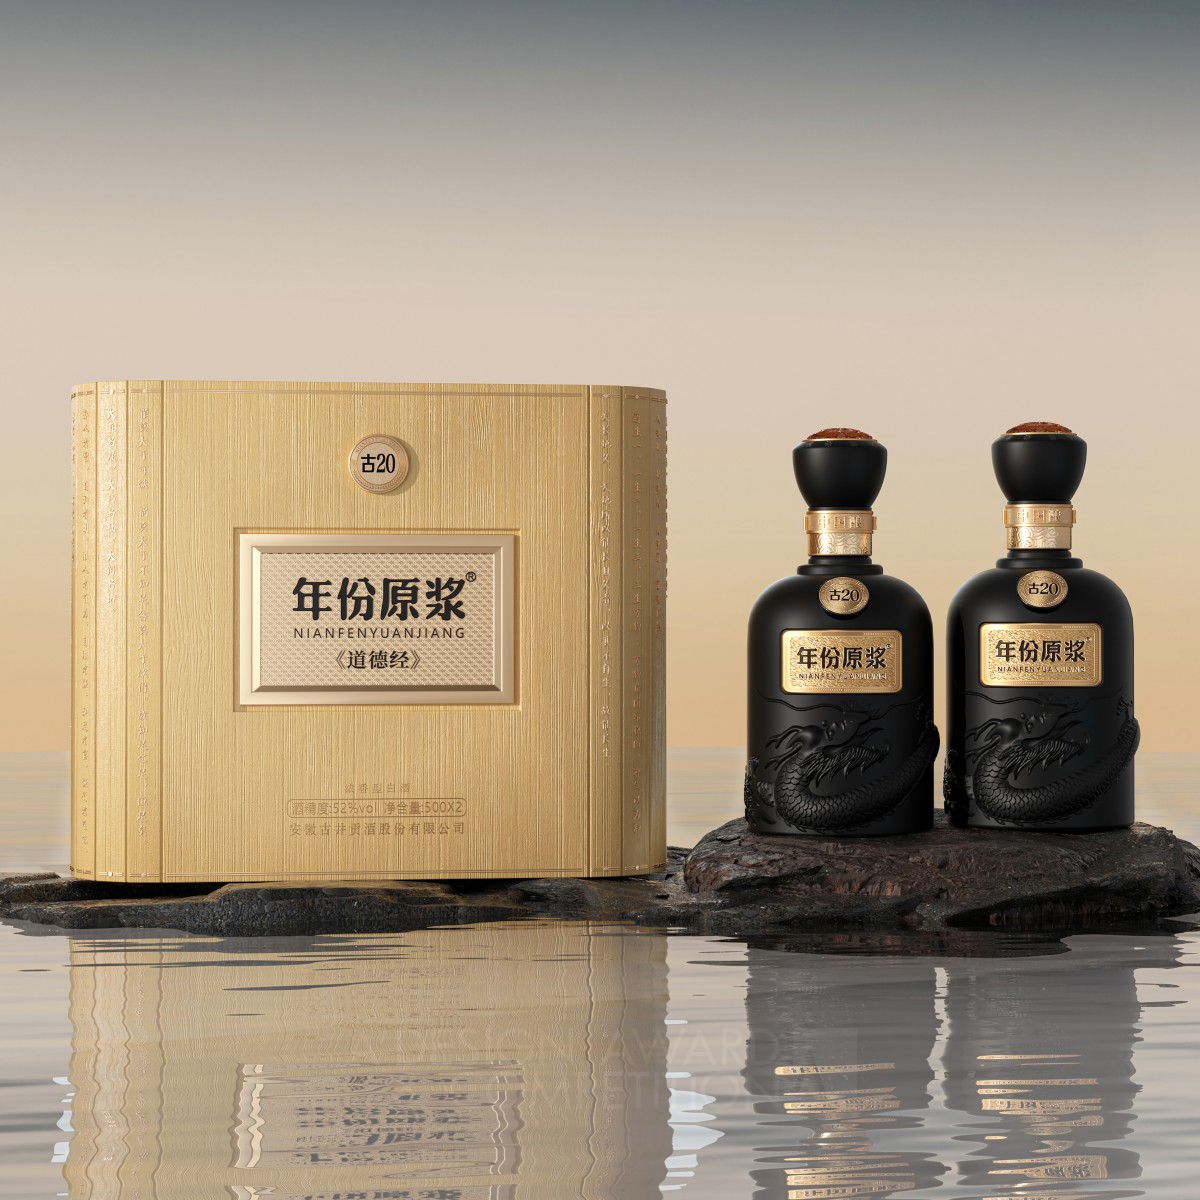 Nianfenyuanjiang Liquor Packaging by Dai Longfeng